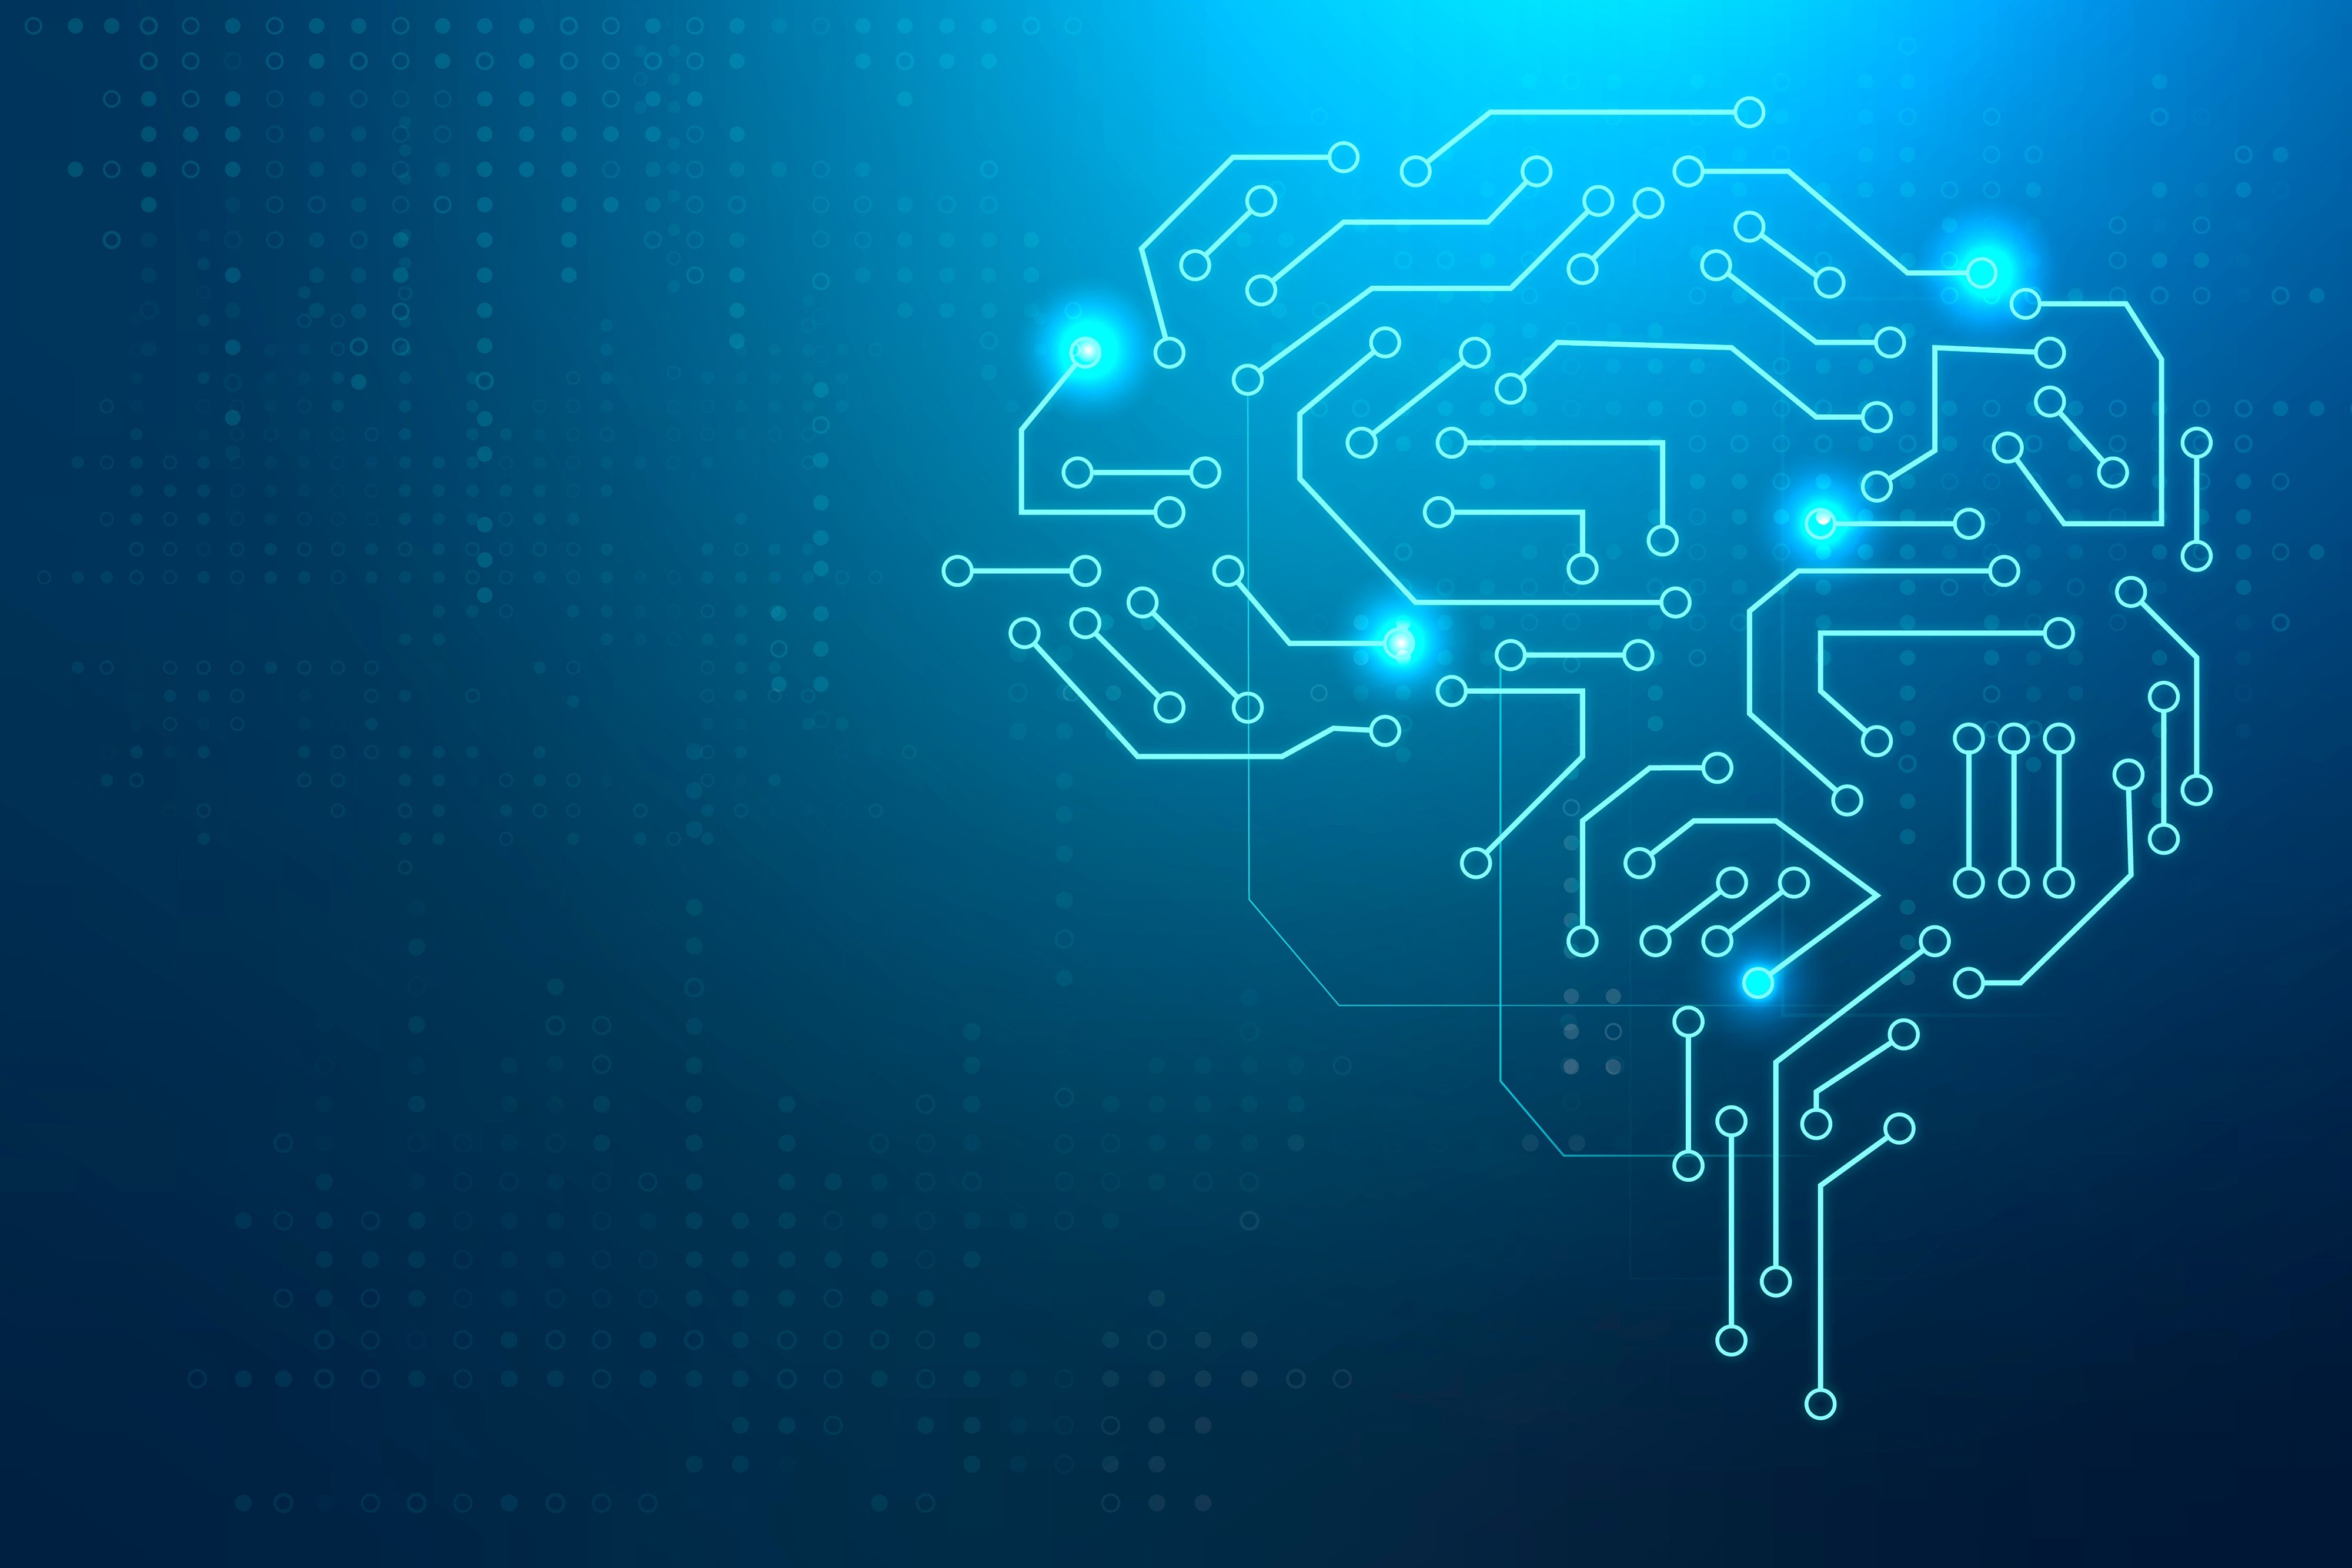 Ilustração digital de uma rede de circuitos em forma de cérebro sobre um fundo azul escuro, simbolizando o conceito de inteligência artificial e aprendizado de máquina, com pontos de conexão brilhantes representando atividade neural ou processamento de dados.